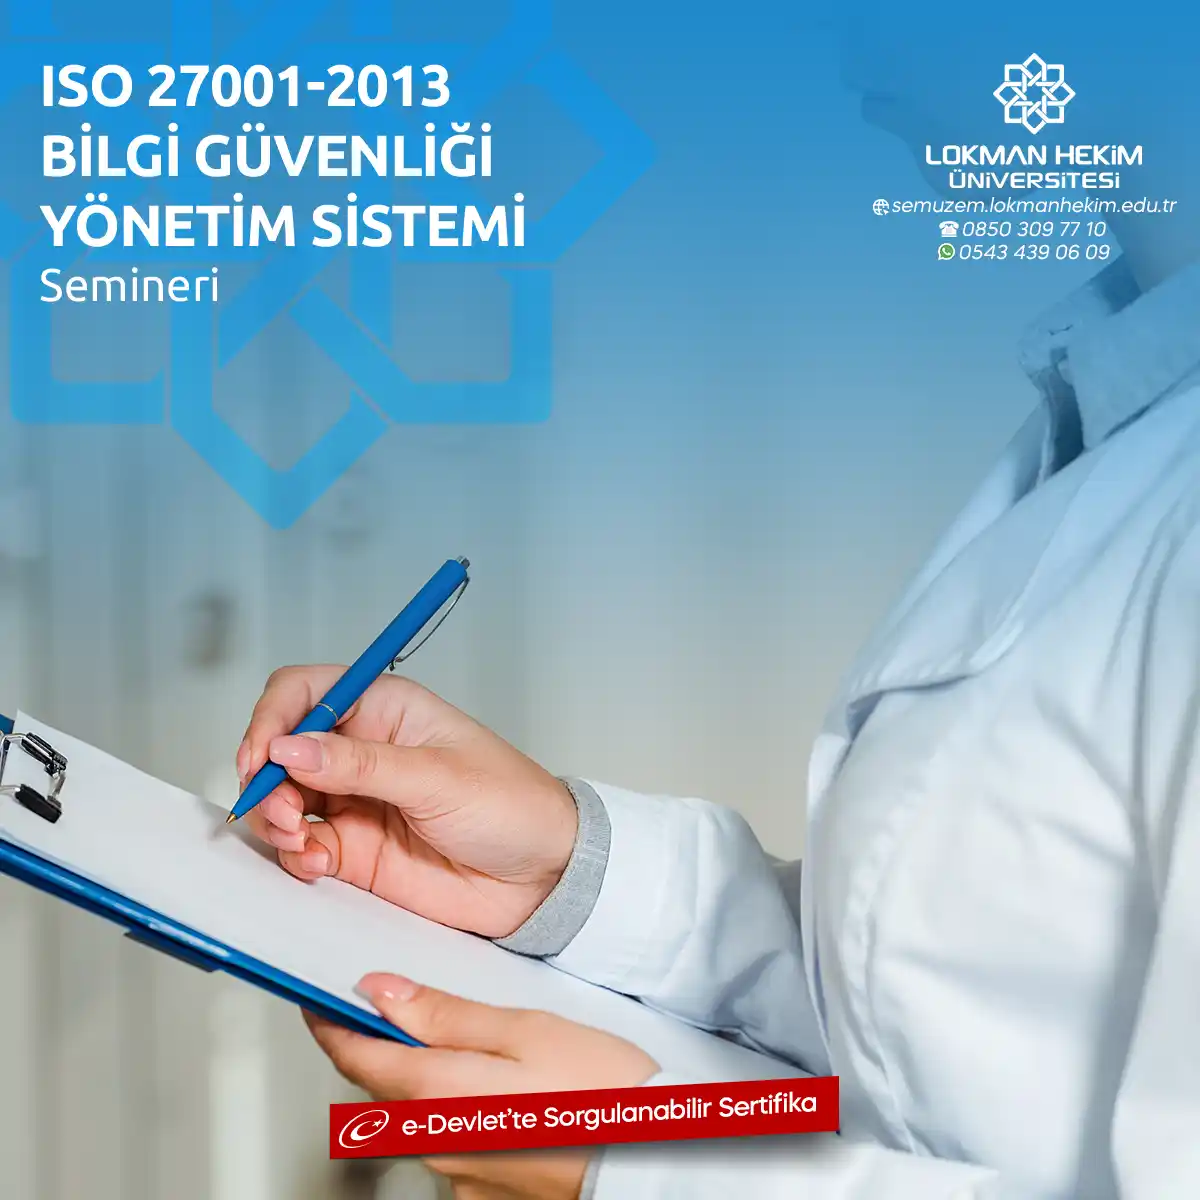 ISO 27001-2013 Bilgi Güvenliği Yönetim Sistemi Semineri